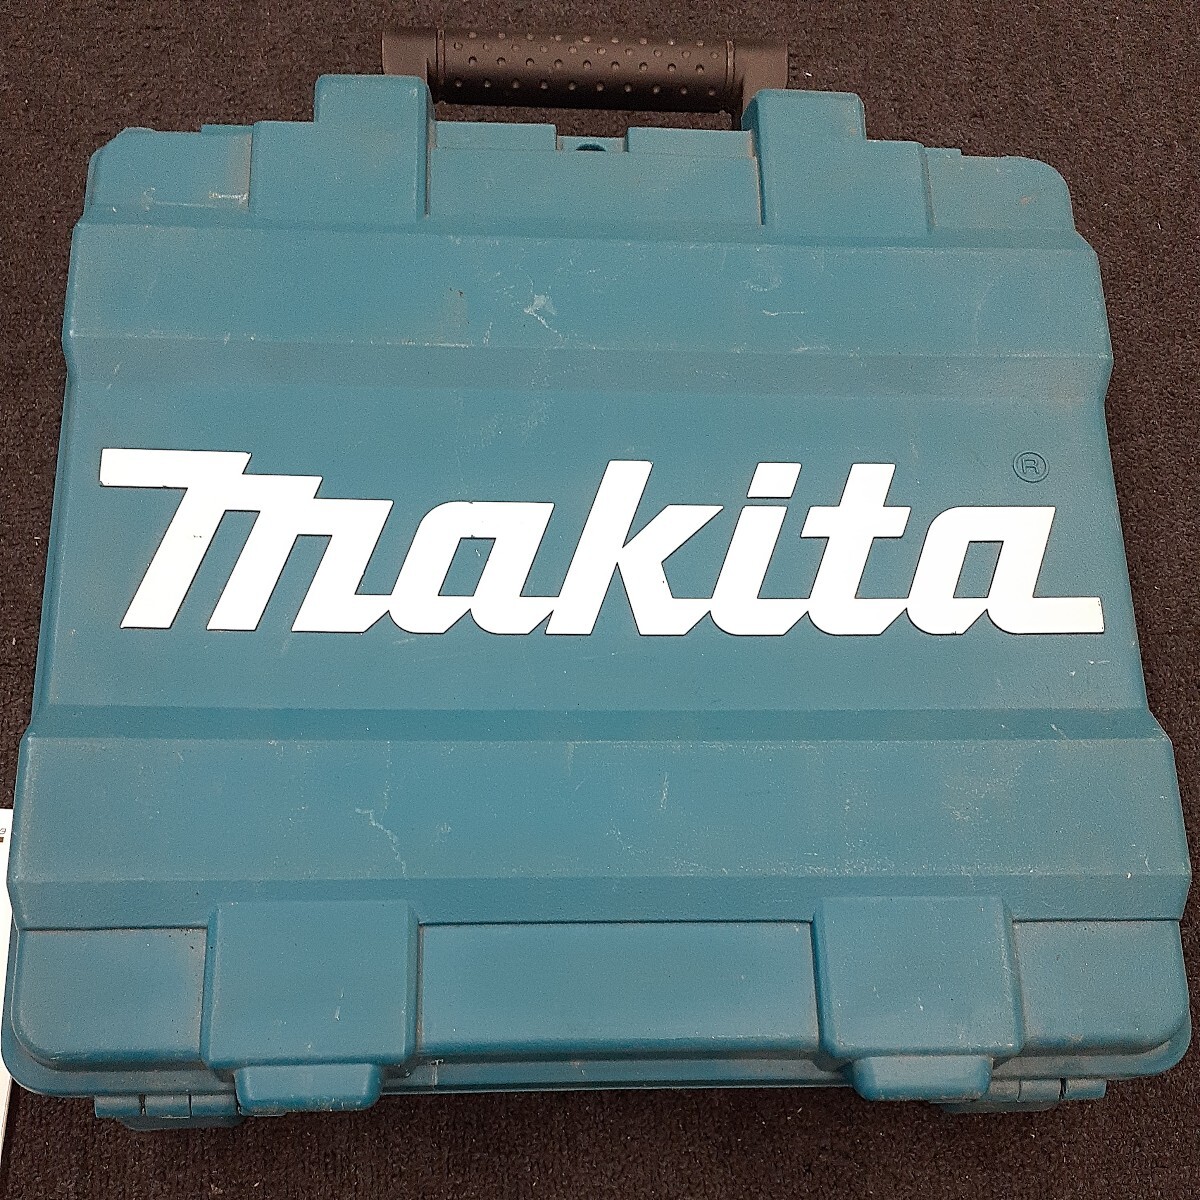 makita Makita высокого давления отделка гвоздь удар AF551H кейс инструкция очки имеется работоспособность не проверялась утиль .